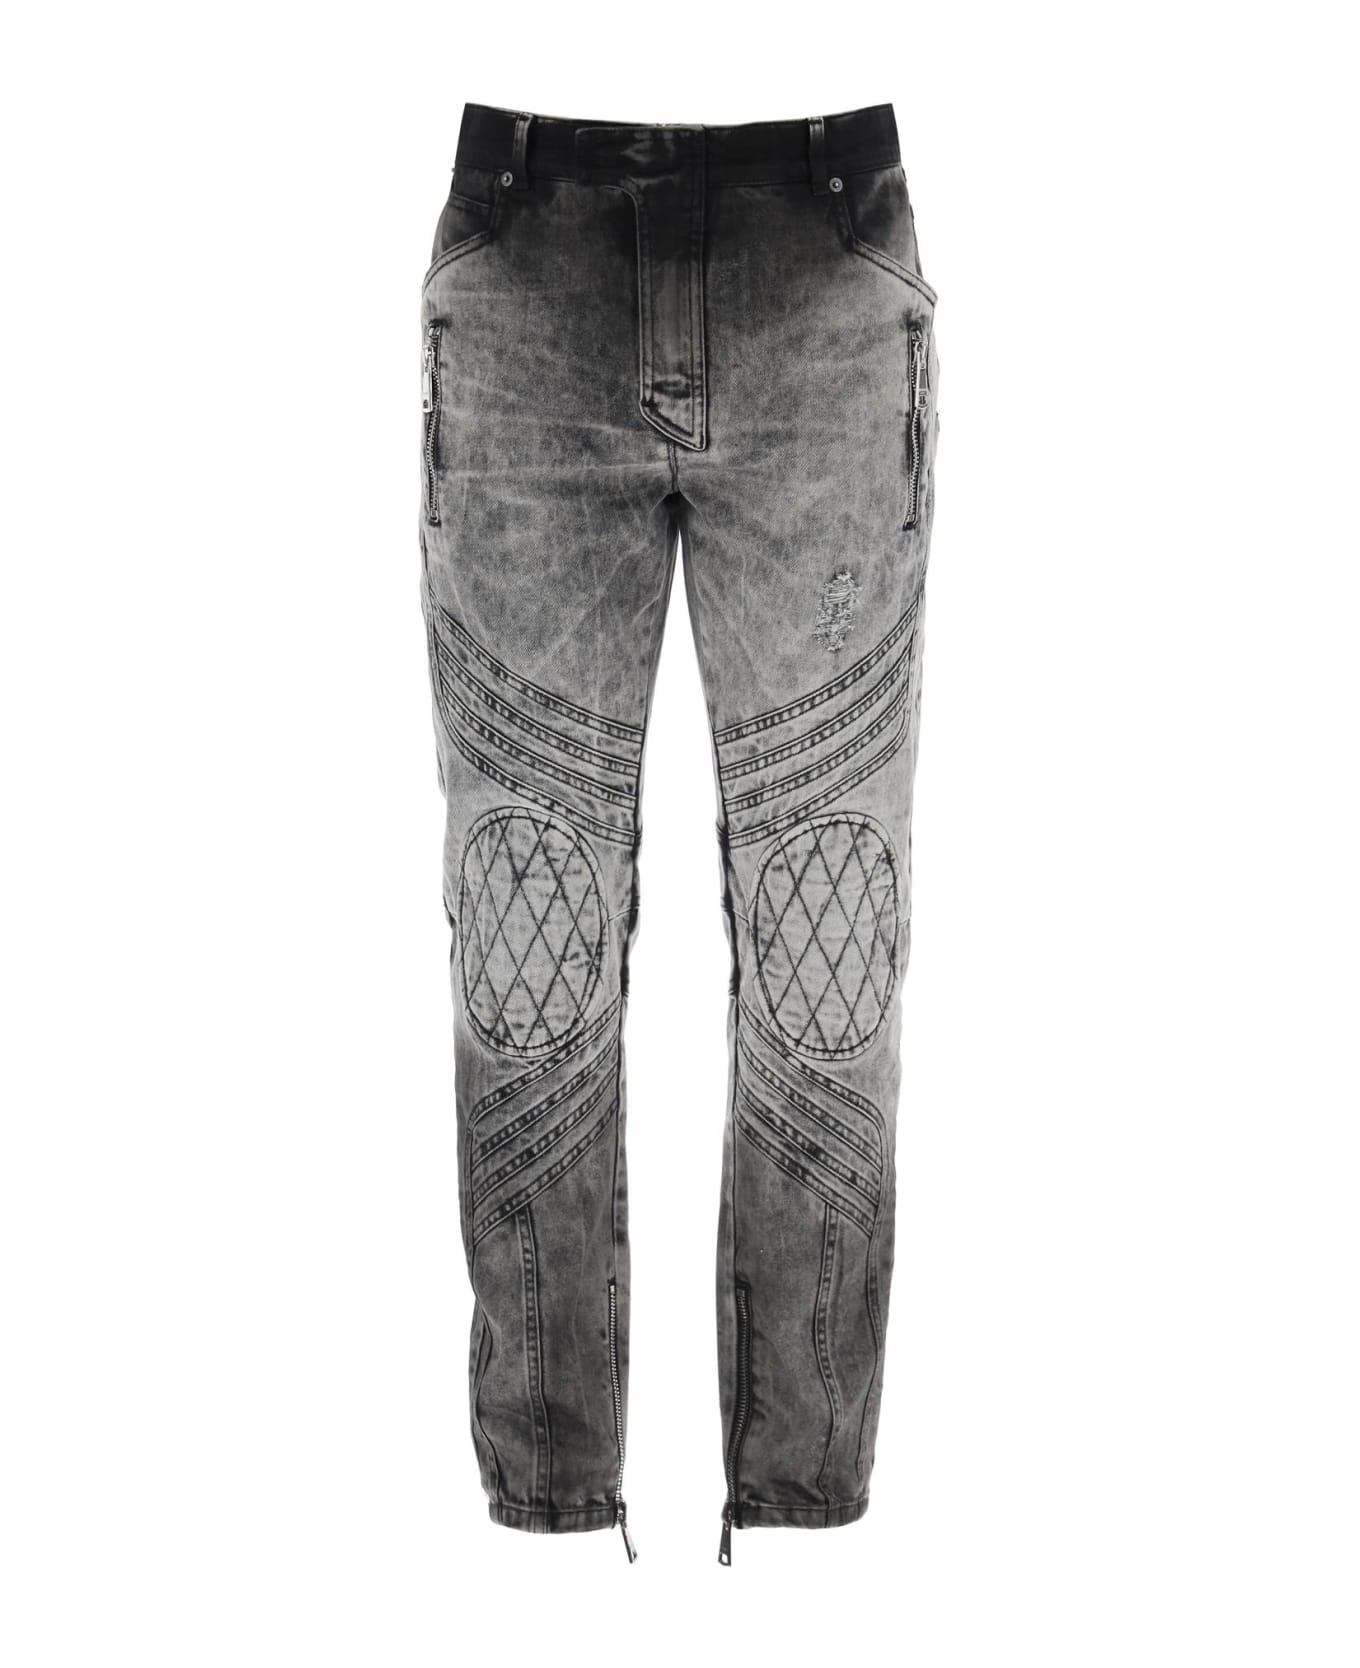 Balmain Motor Slim Fit Jeans - GRIS CLAIR DELAVE (Grey) デニム